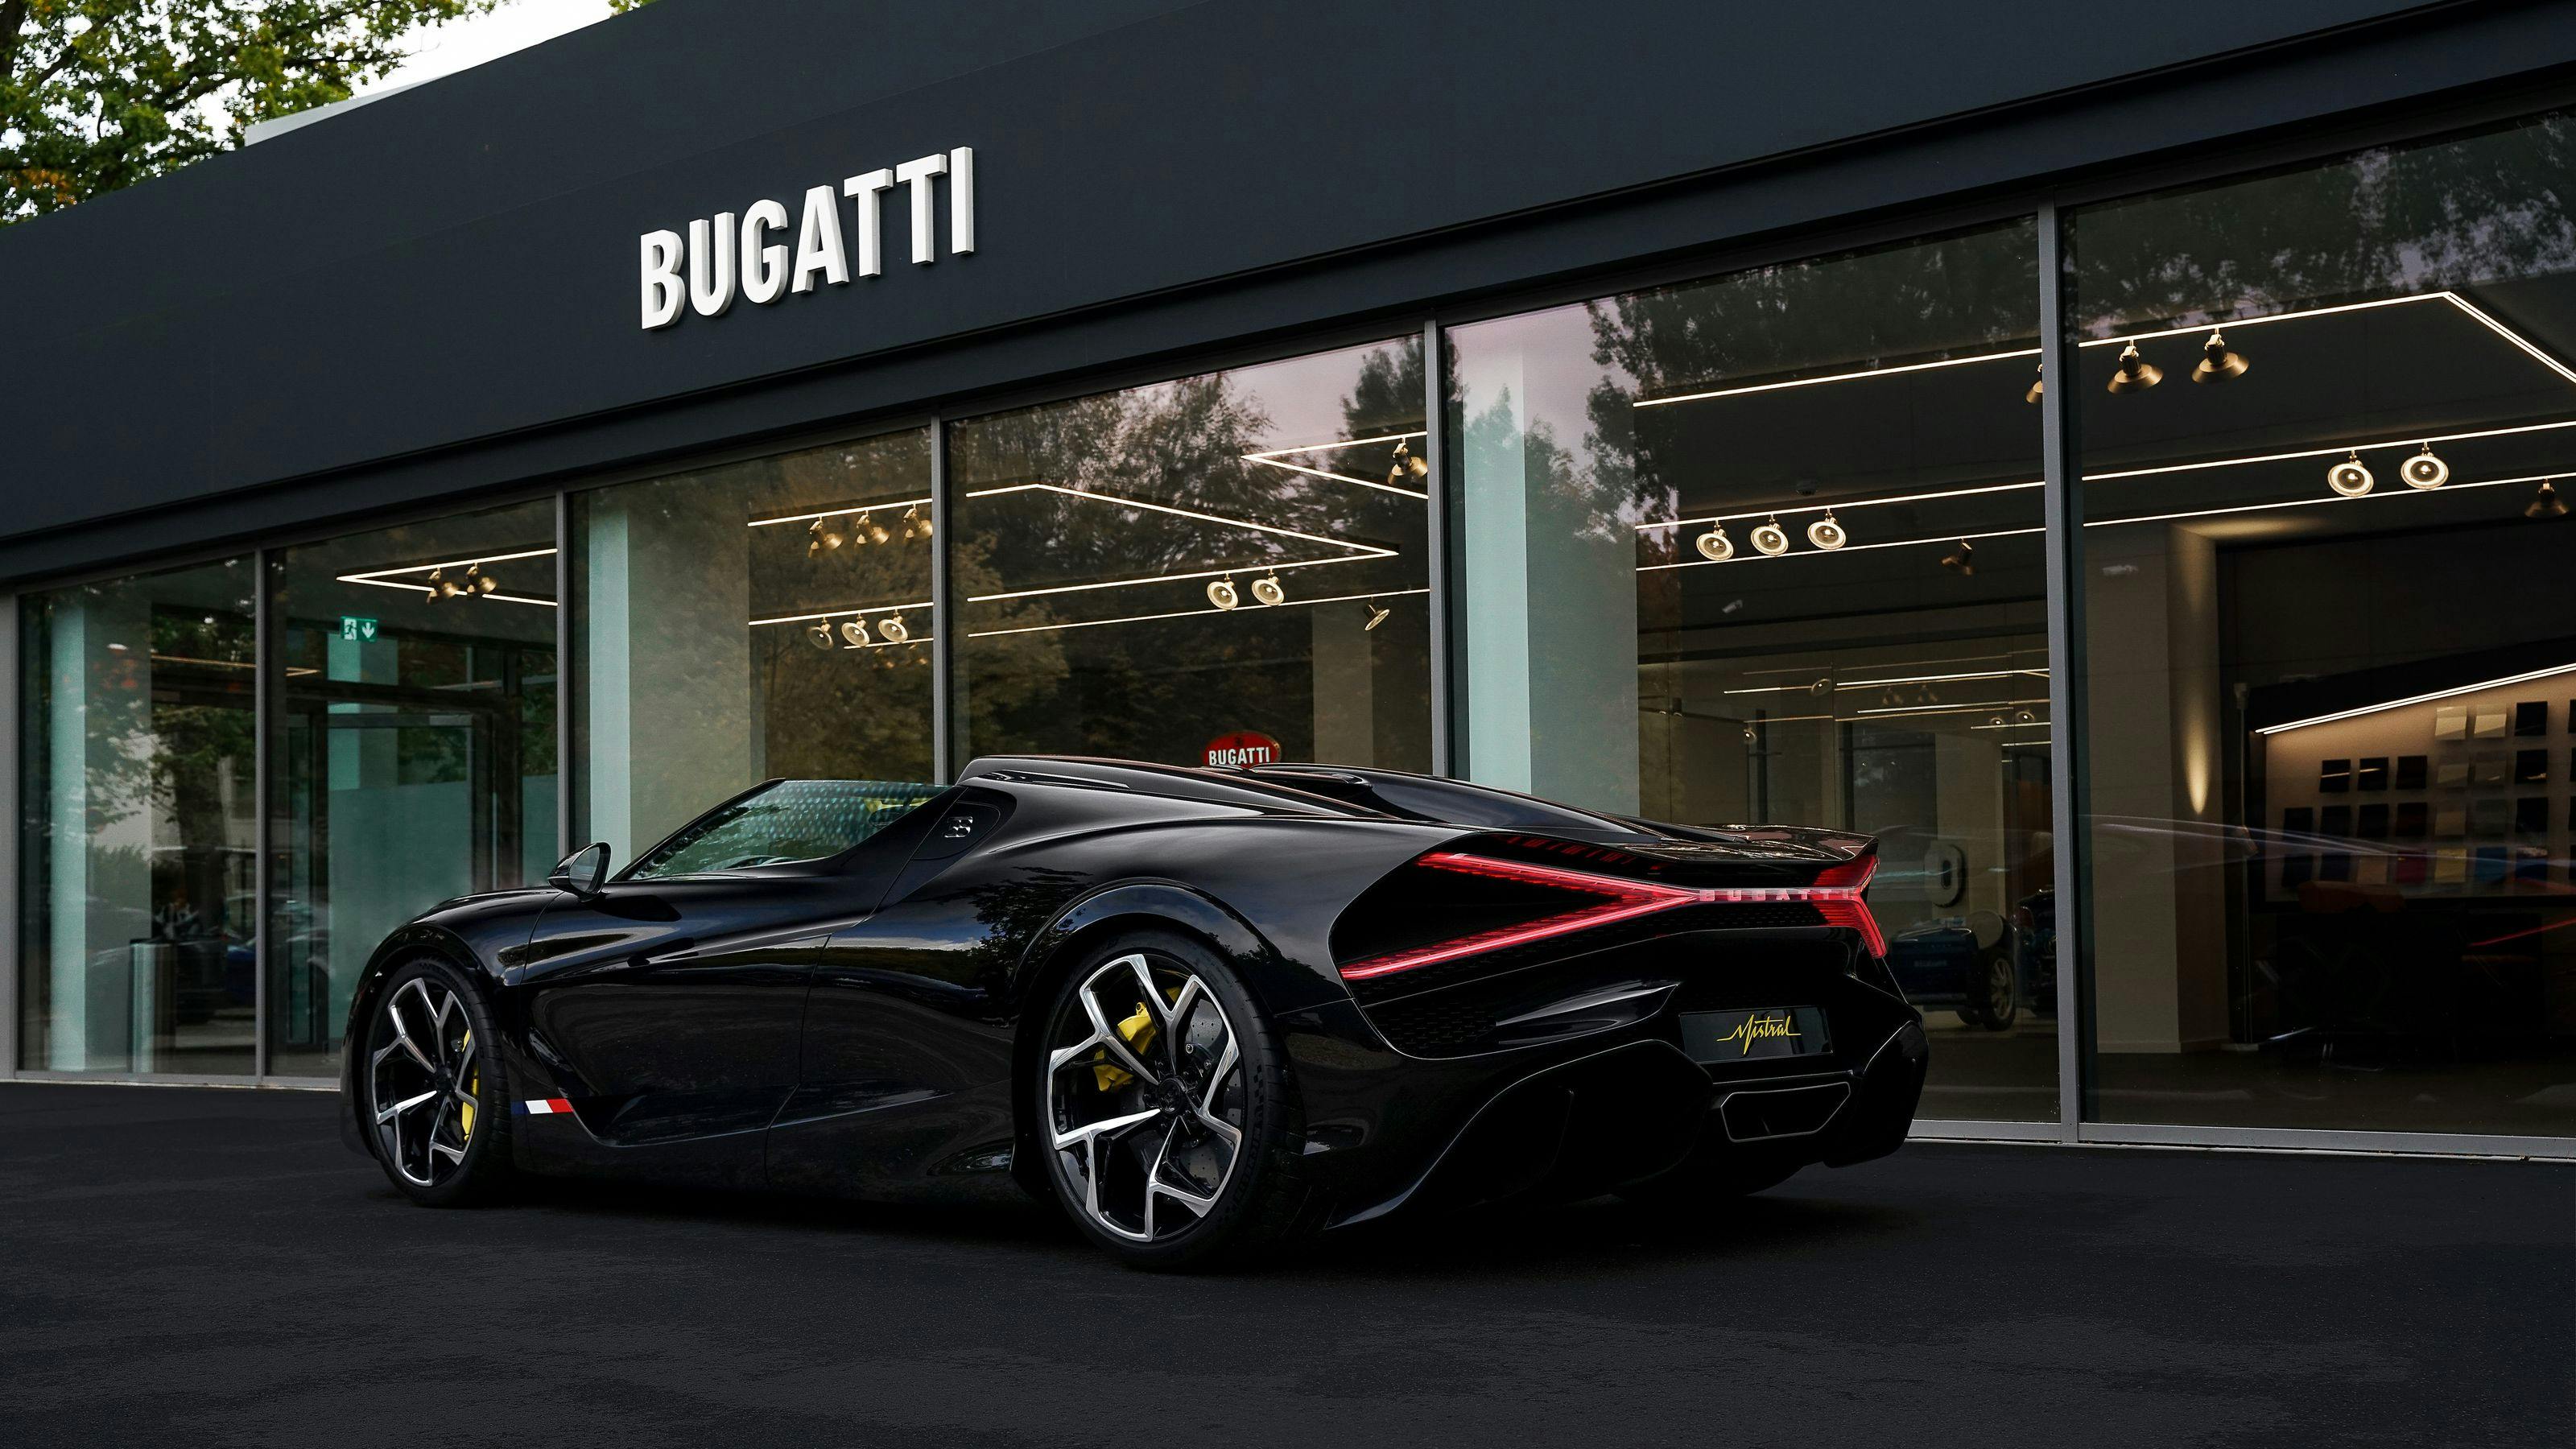 The new home of Bugatti Hamburg